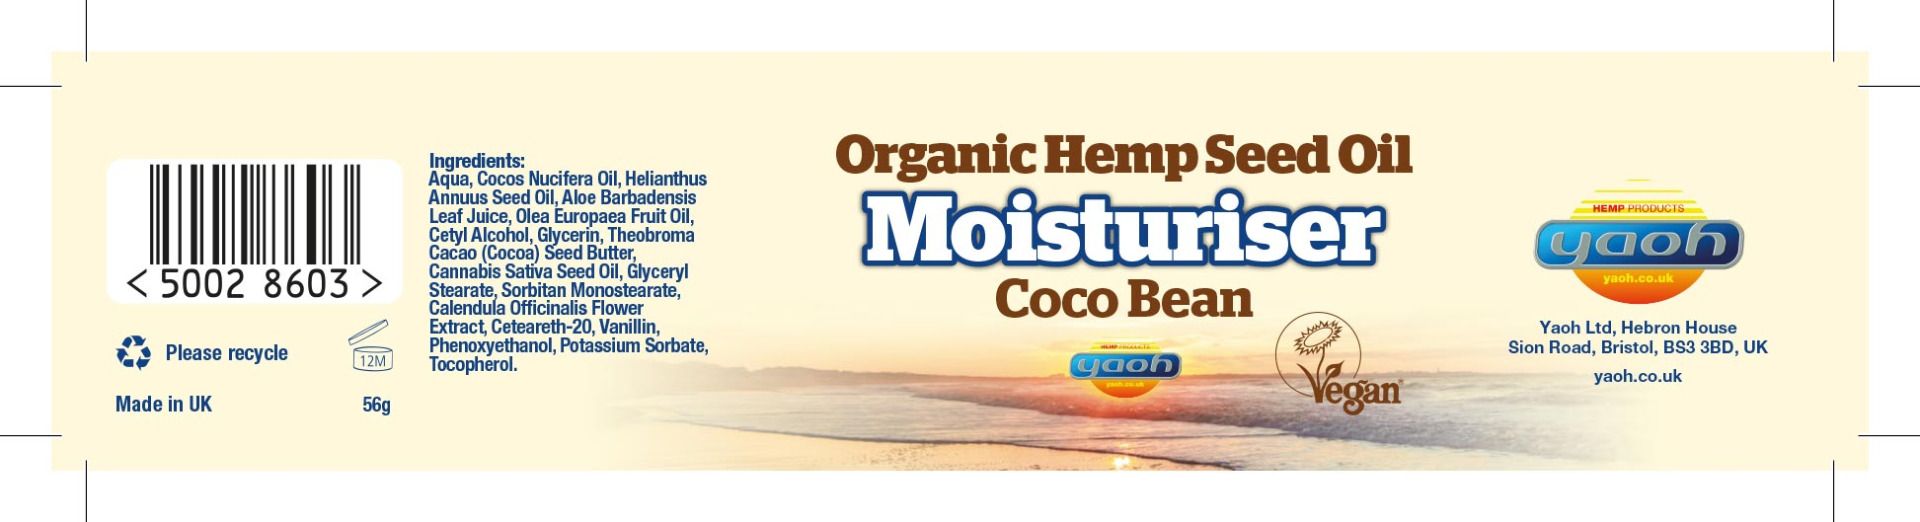 Hemp Seed Oil Moisturiser - Coco Bean